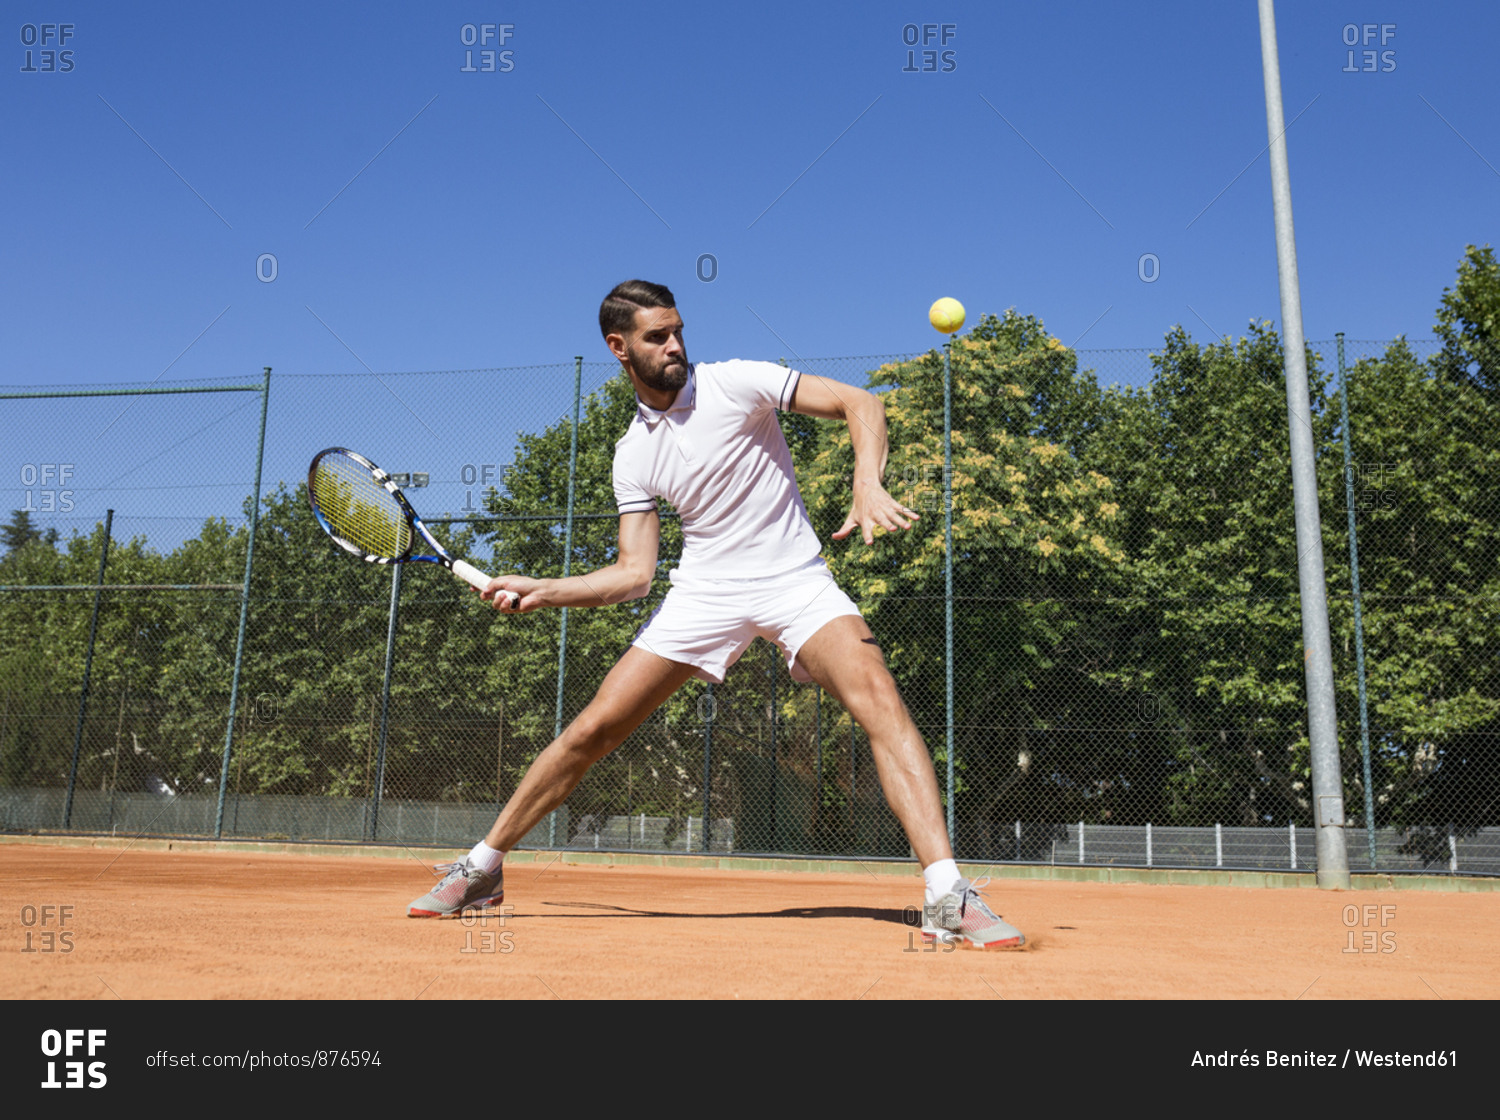 Tennis player during a tennis match